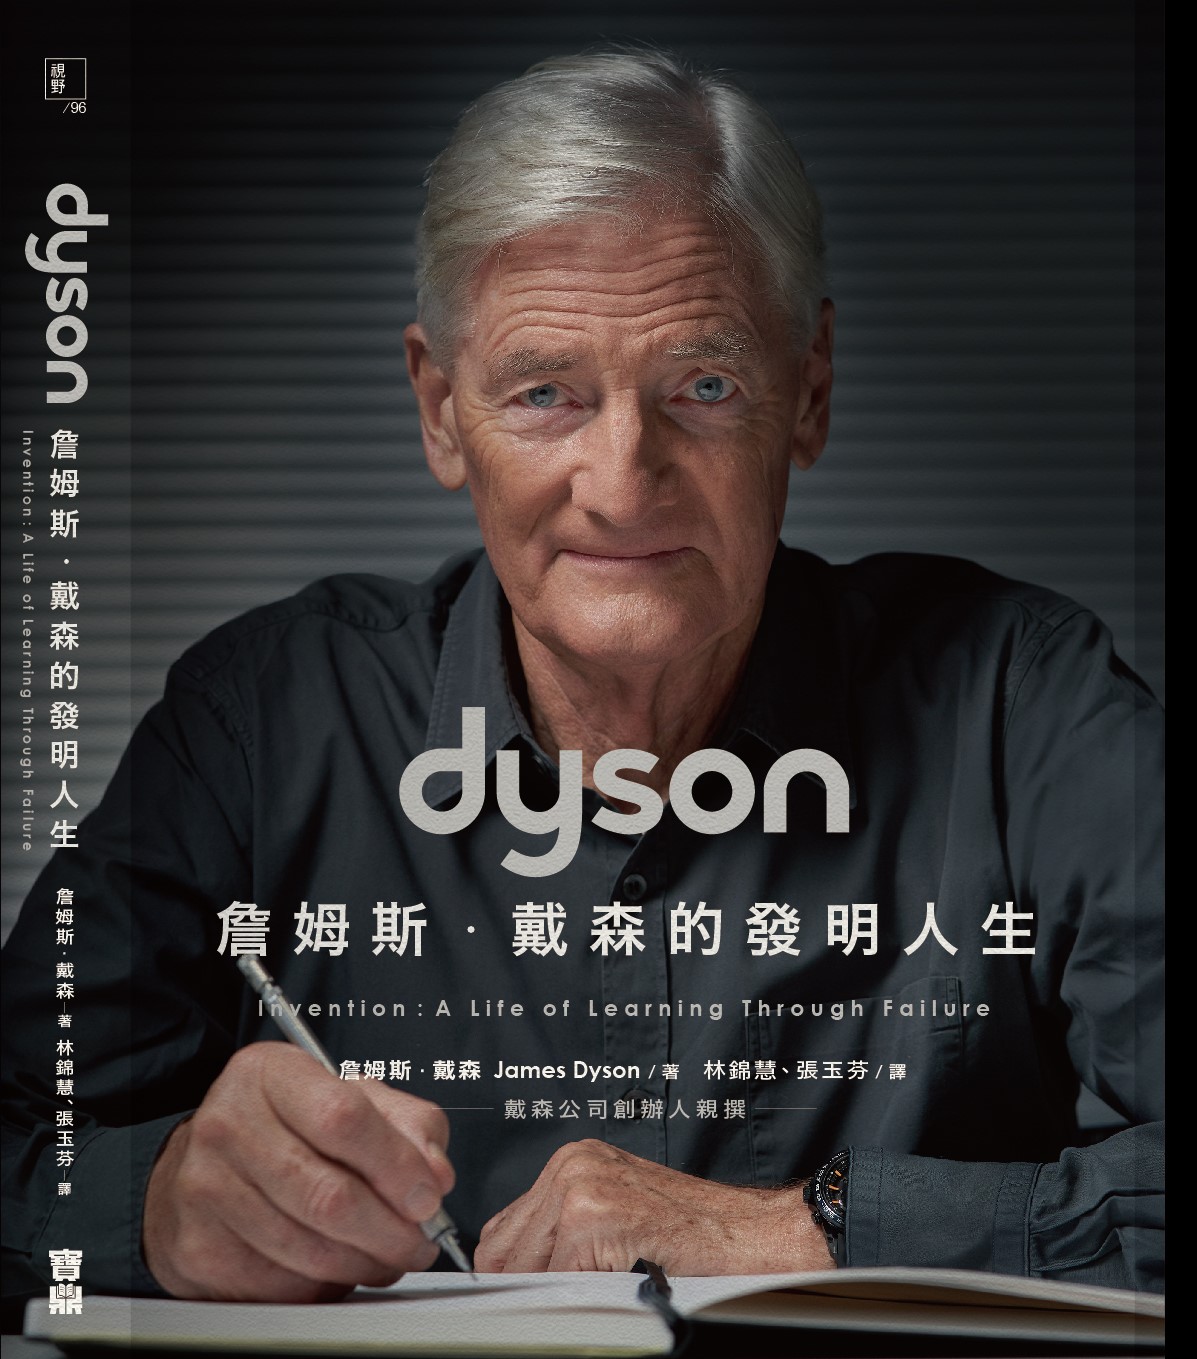 他賭上20年青春、所有身家，發明了改變世界的Dyson吸塵器。戴森如何從失敗中學習，打造他的科技王國？